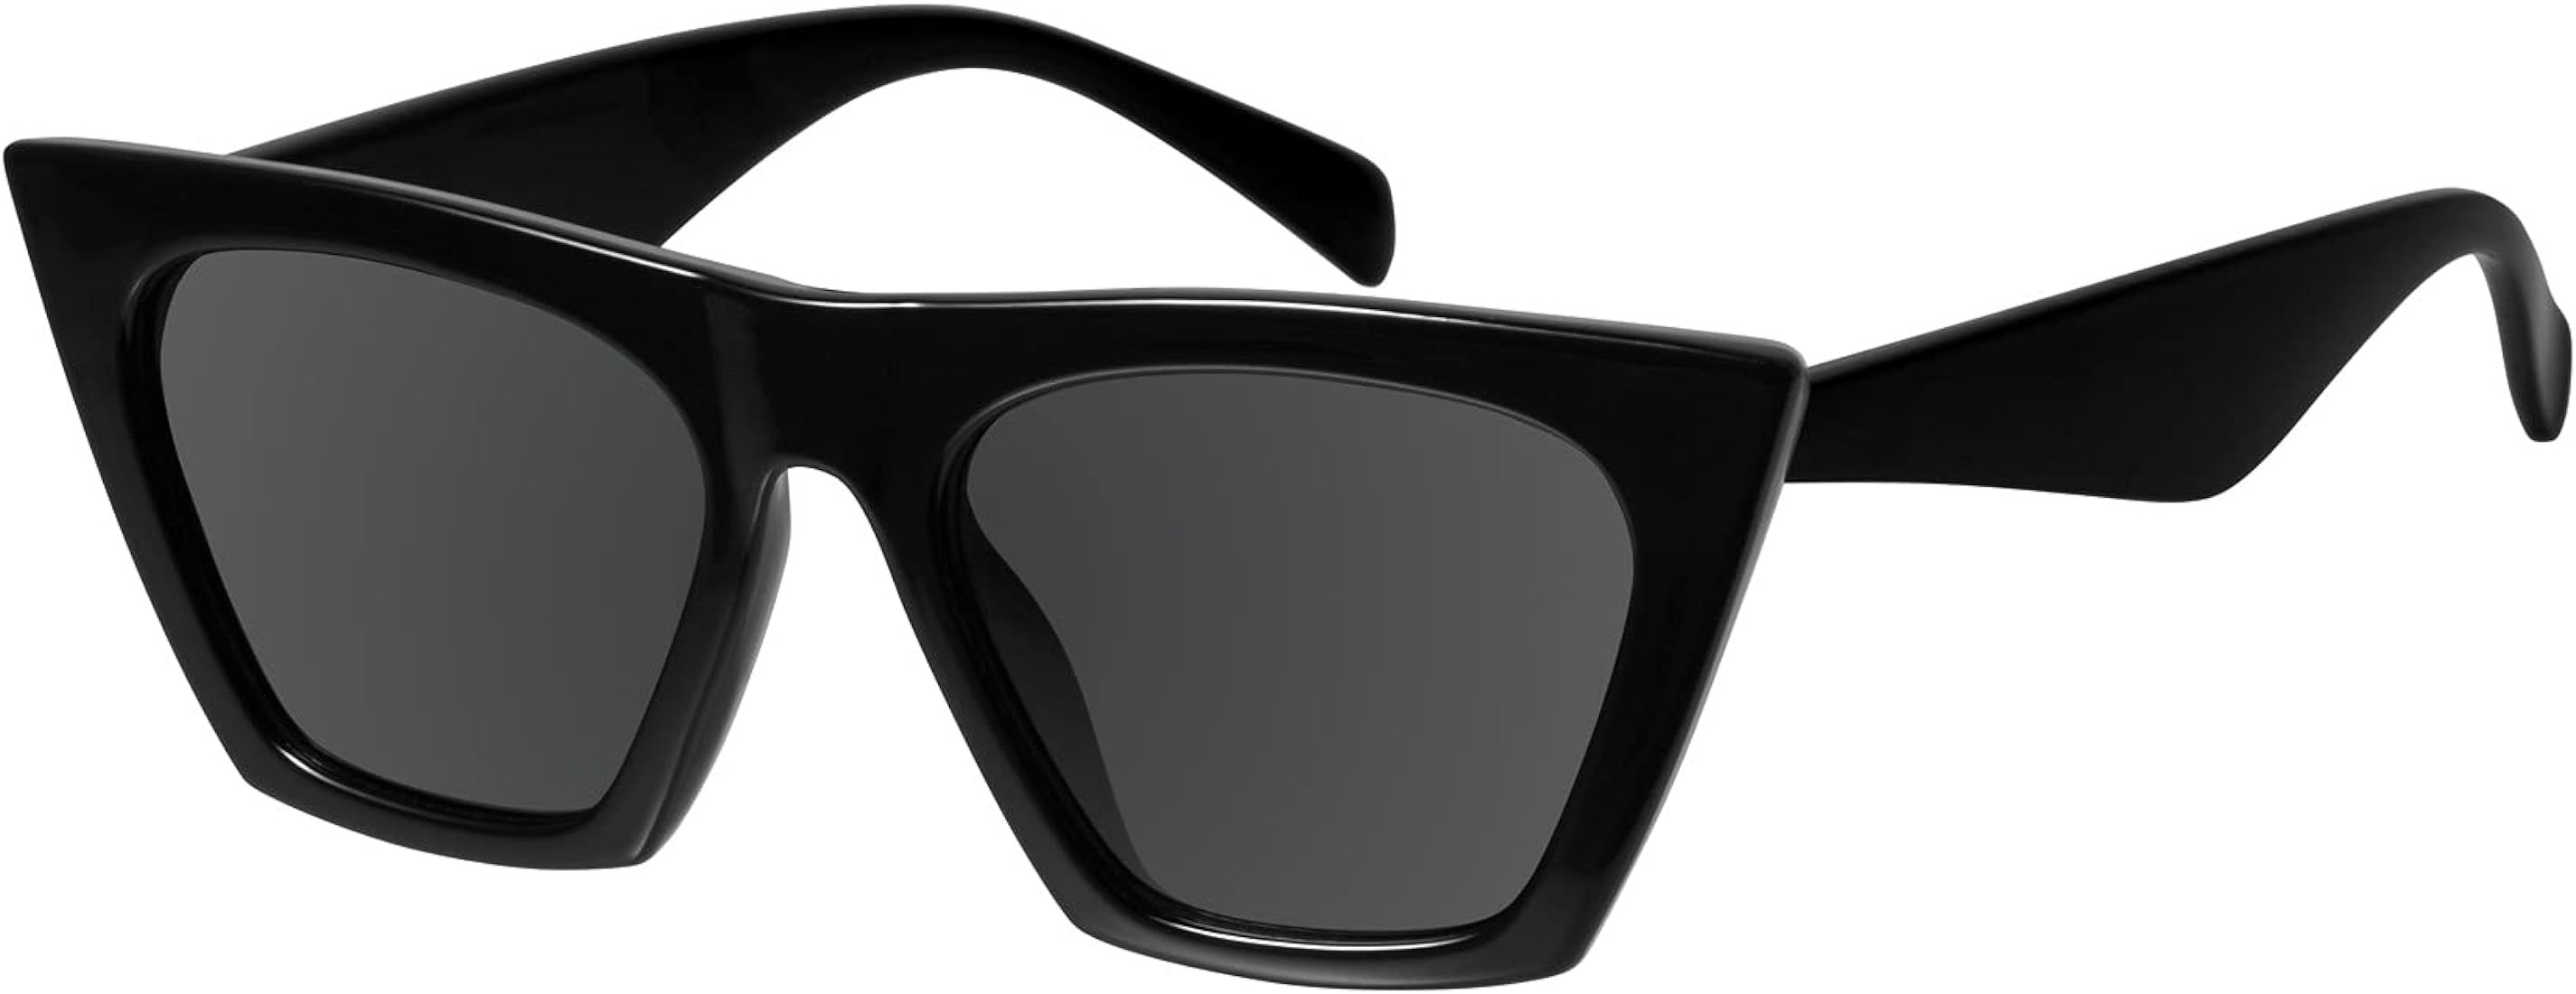 Amazon.com: mosanana Square Cat Eye Sunglasses for Women Trendy Style Black Shine : Clothing, Sho... | Amazon (US)